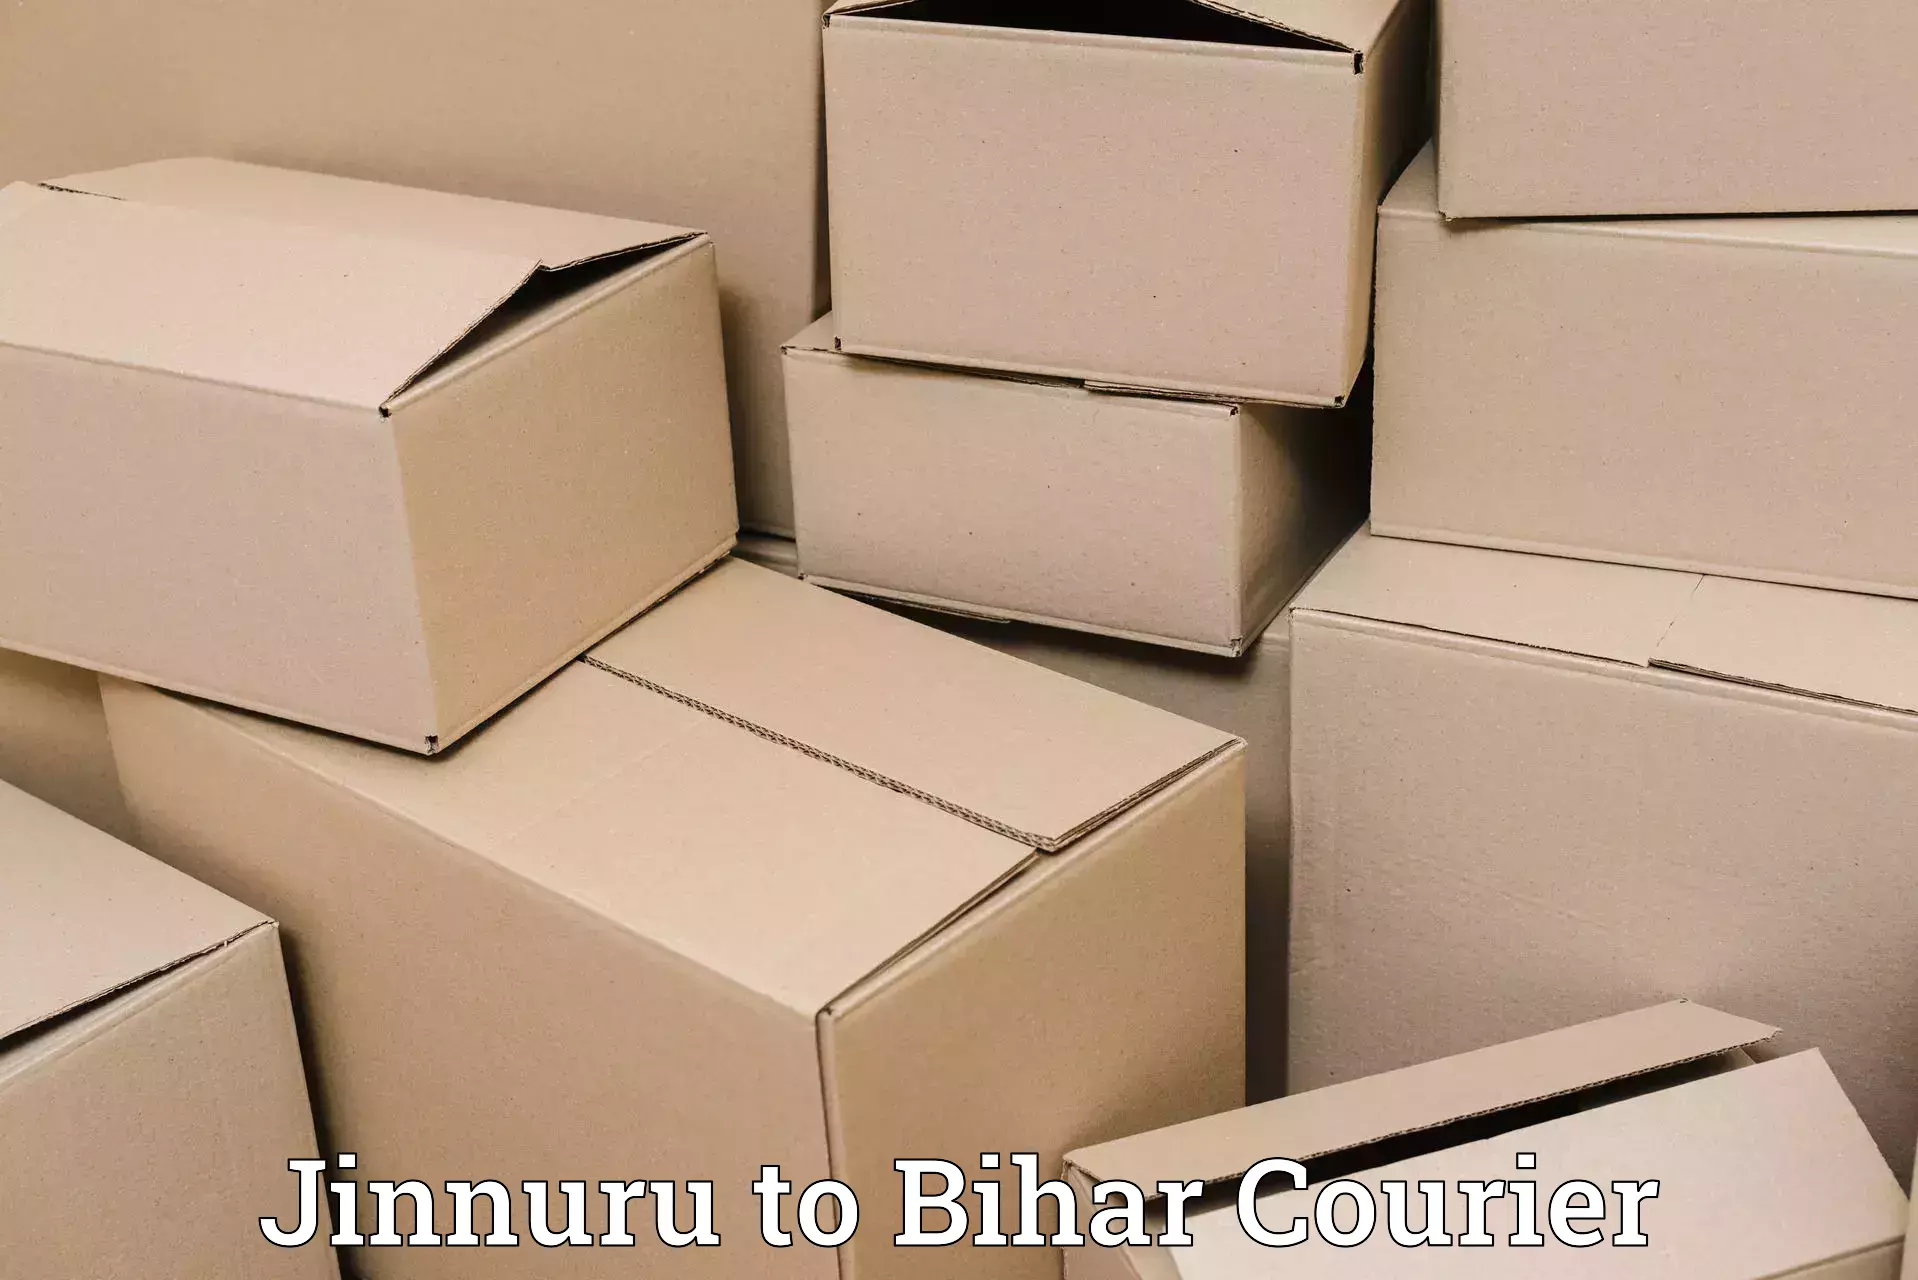 Quality courier services Jinnuru to Patna